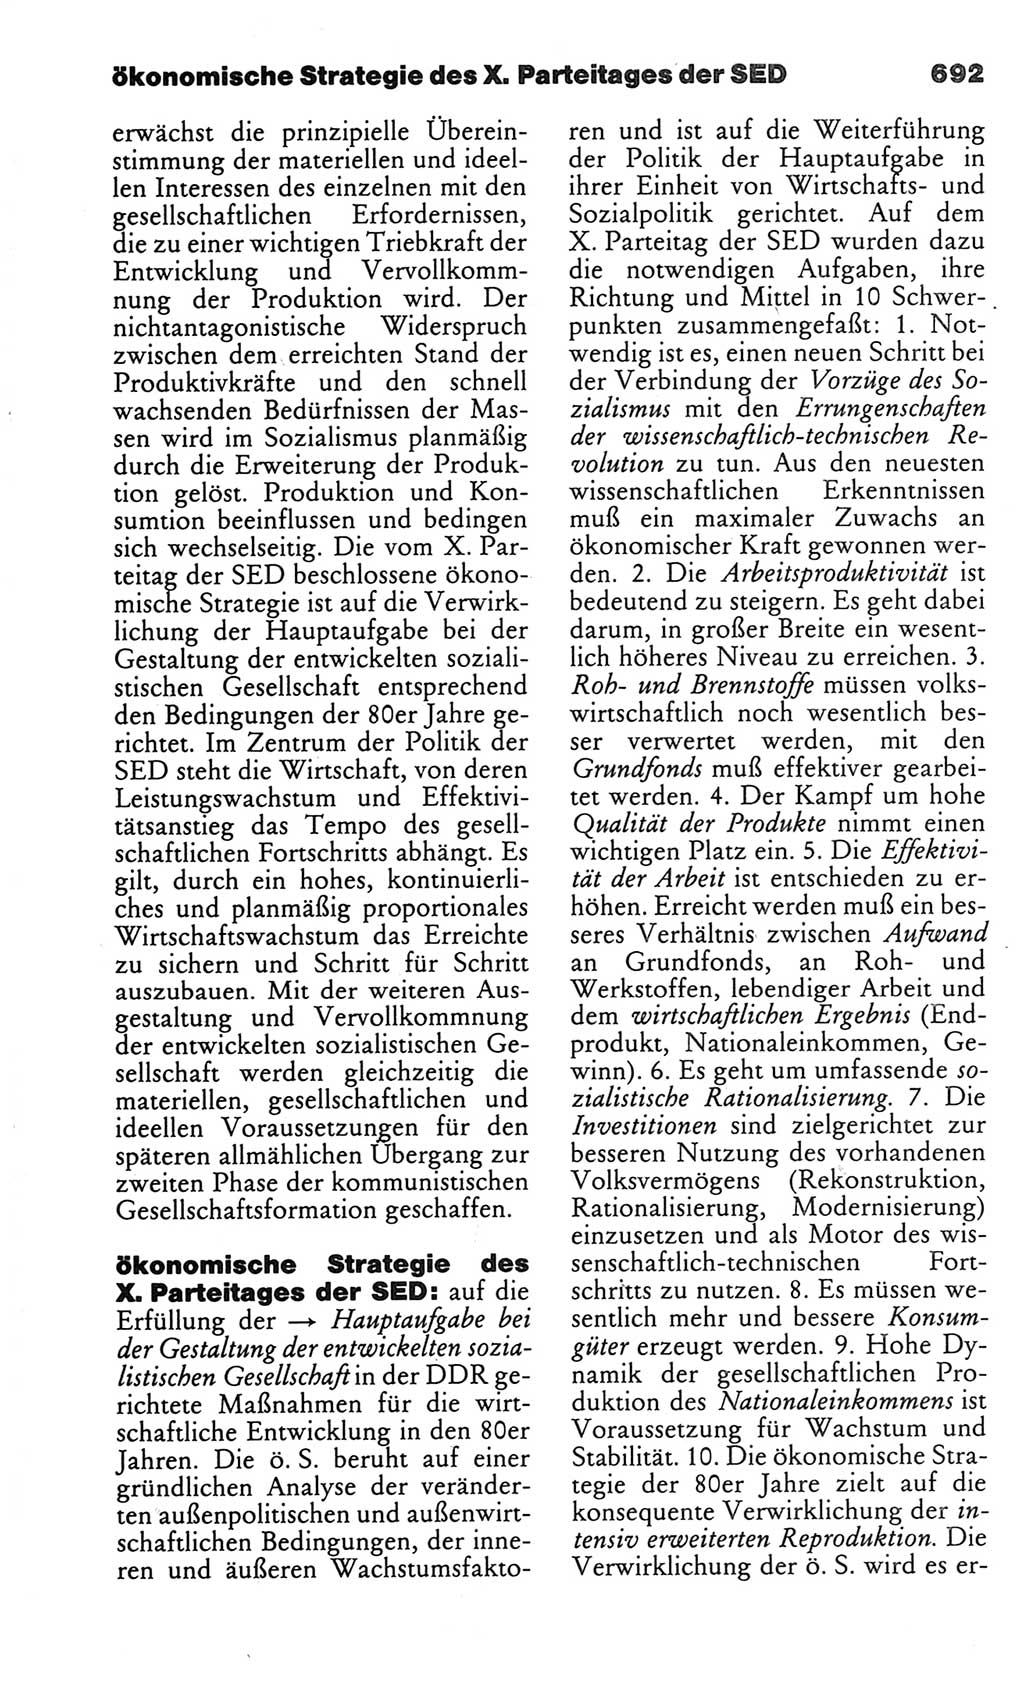 Kleines politisches Wörterbuch [Deutsche Demokratische Republik (DDR)] 1983, Seite 692 (Kl. pol. Wb. DDR 1983, S. 692)